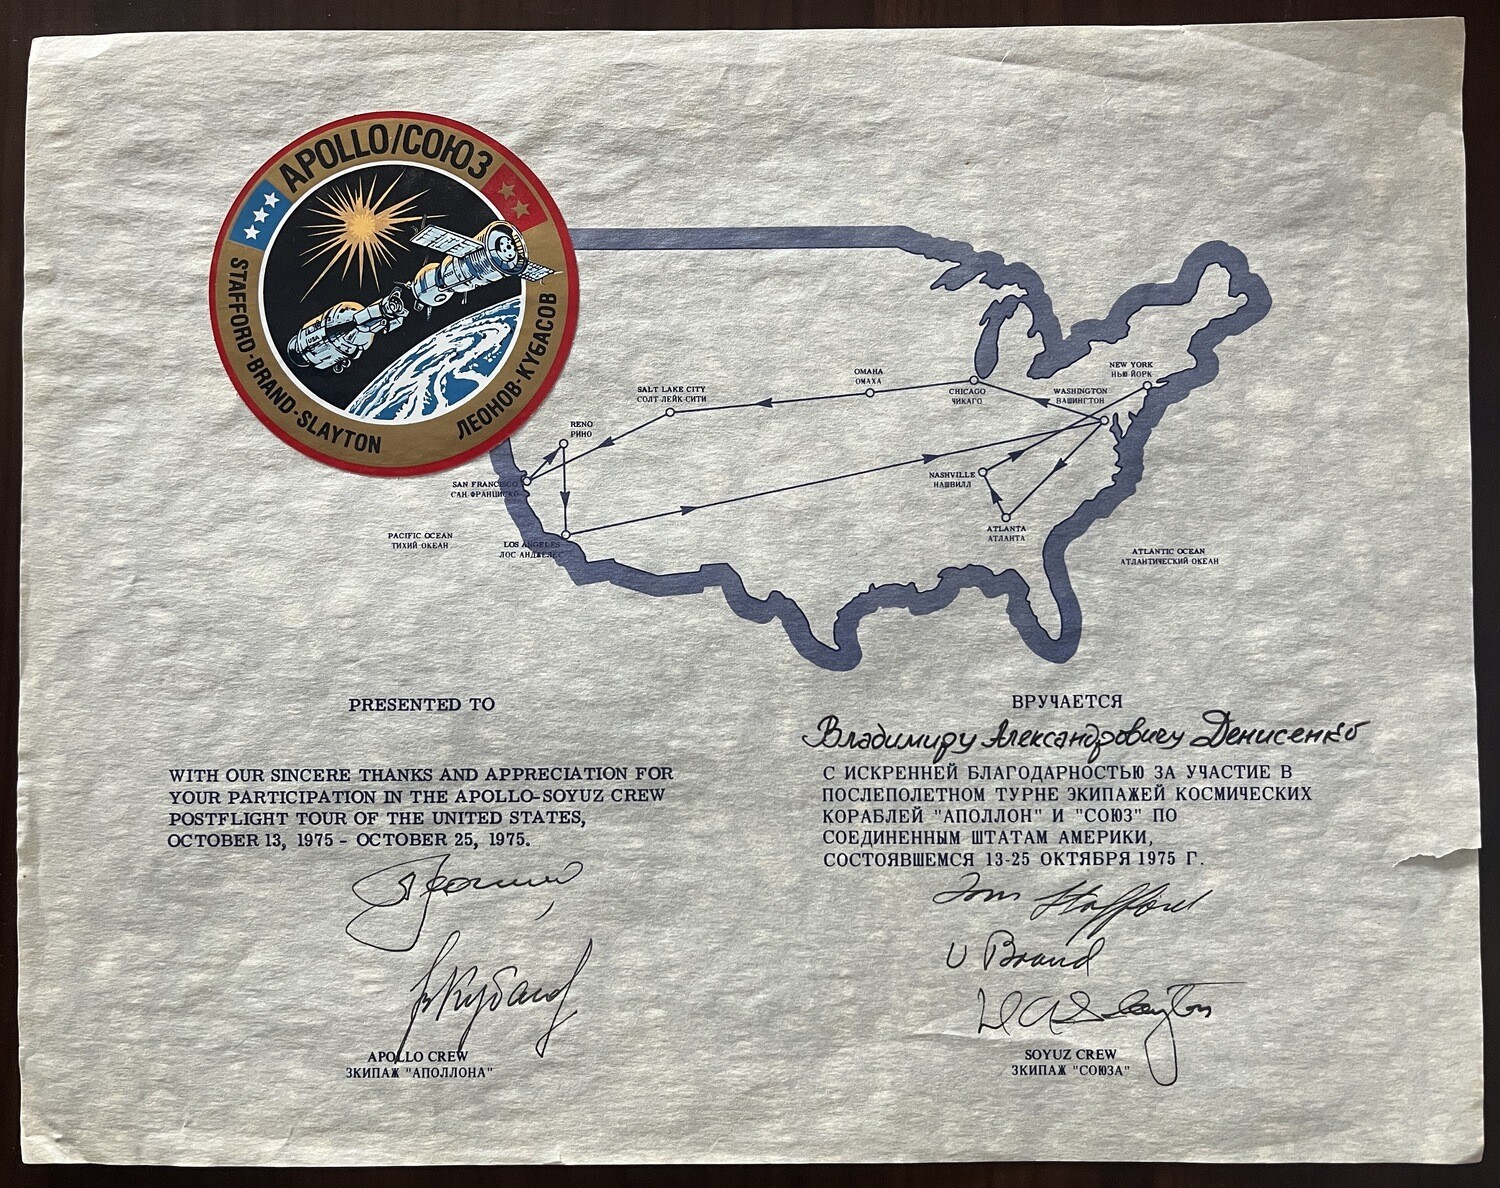 Apollo-Soyuz crew postflight tour signed